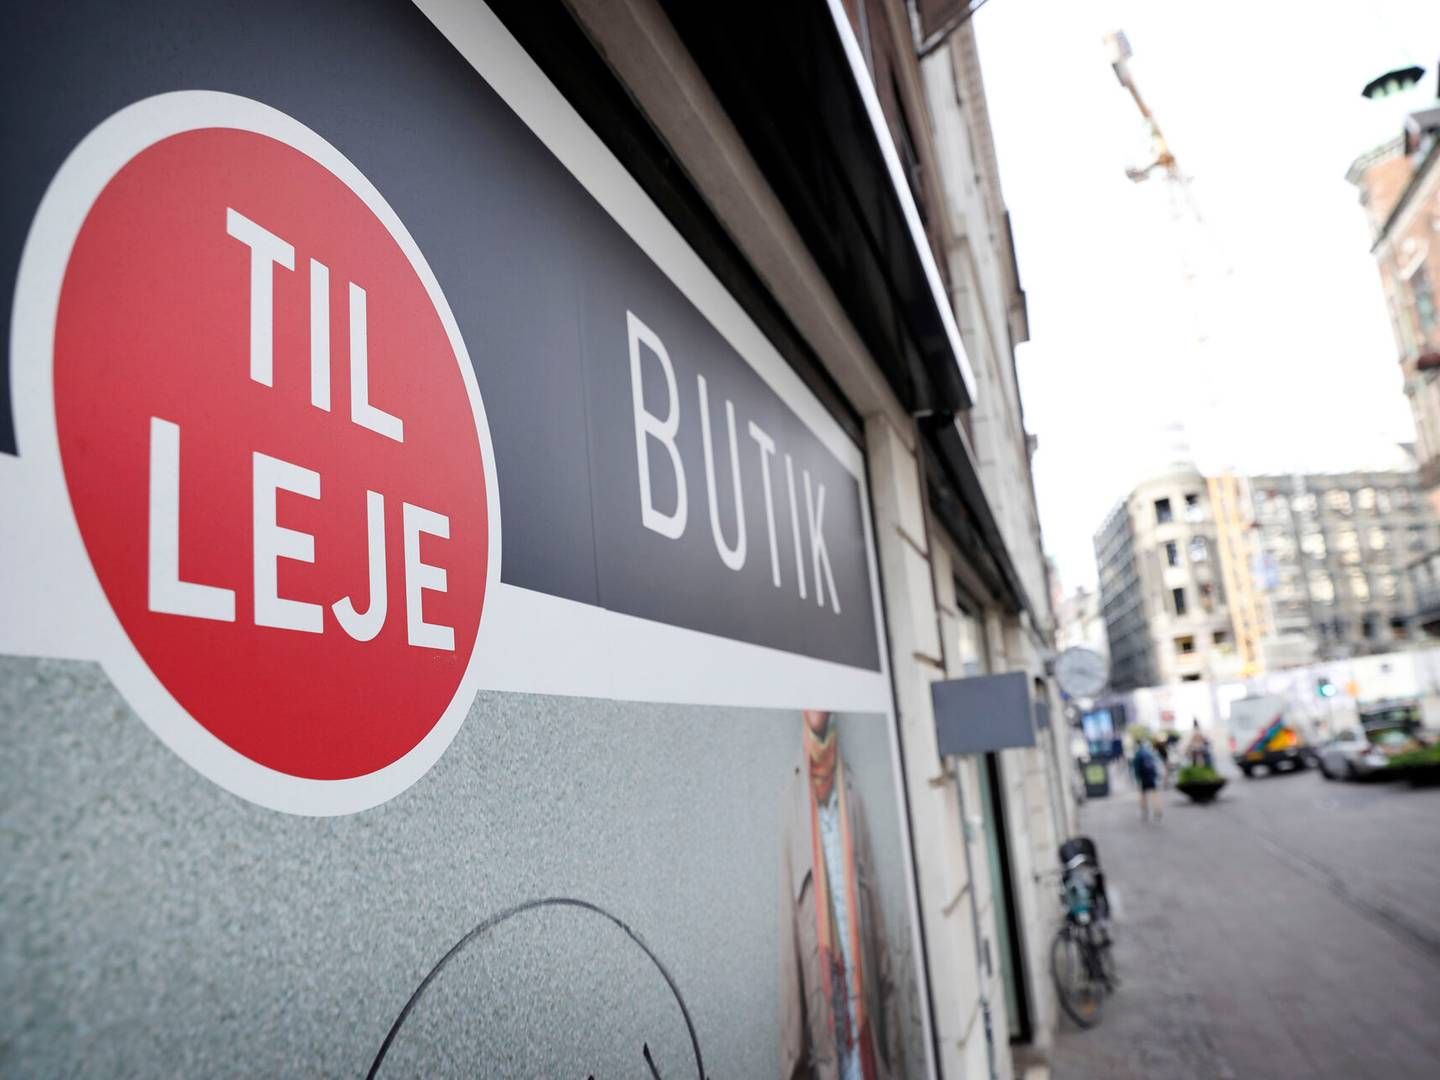 Tomme butikslokaler præger dele af detailhandlen. | Foto: Jens Dresling/Ritzau Scanpix